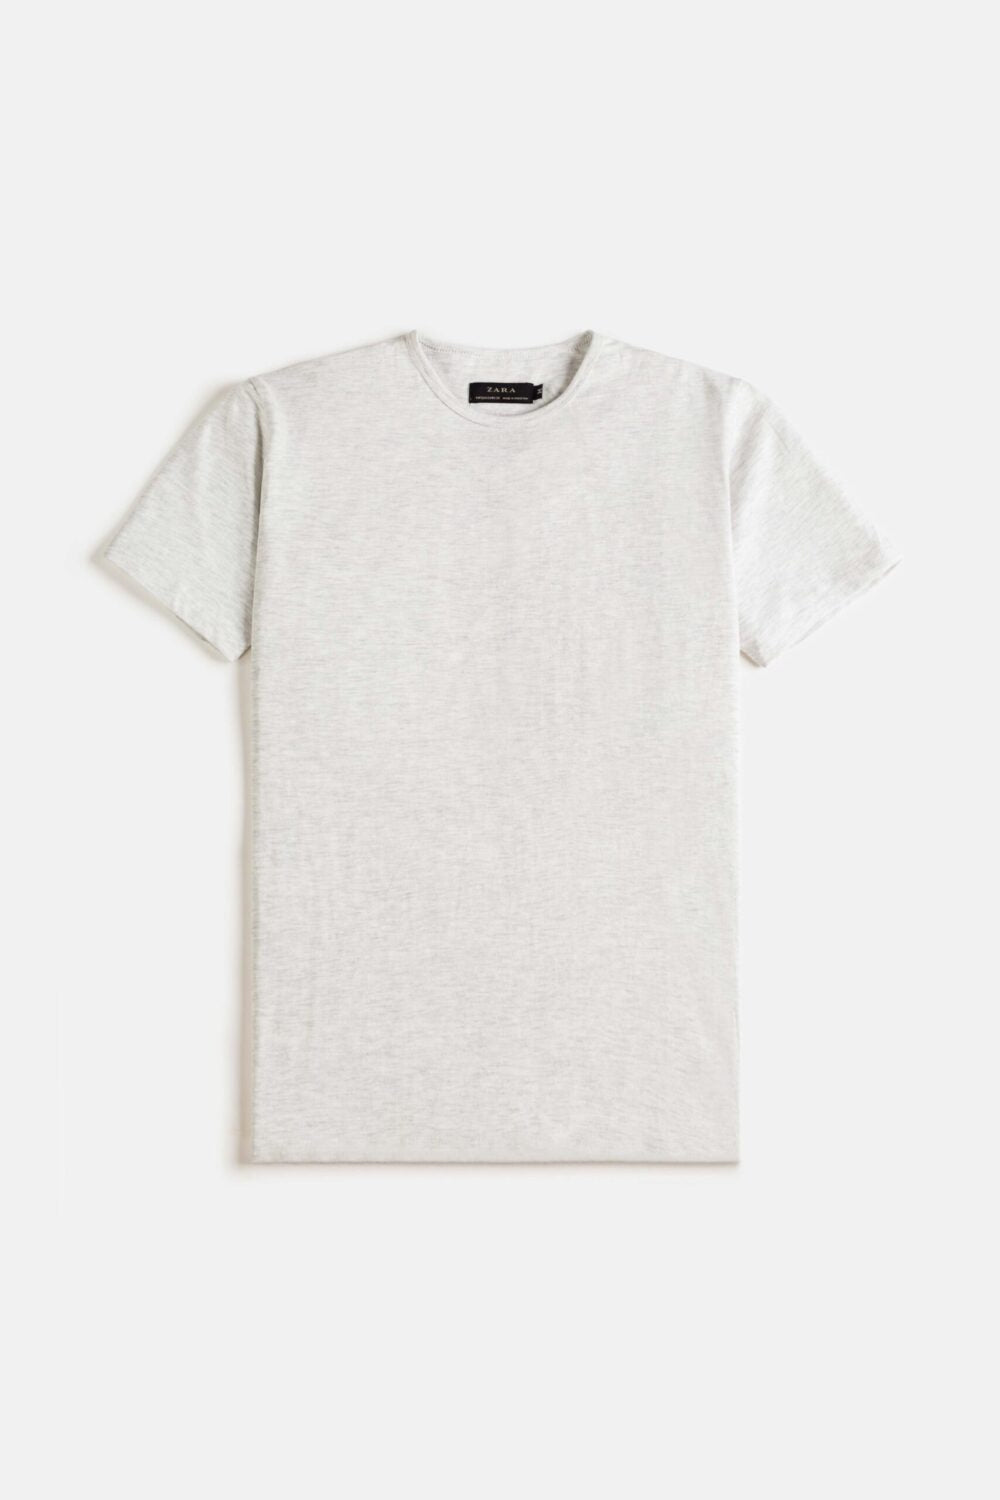 ZR Basic Cotton T Shirt – Bone White